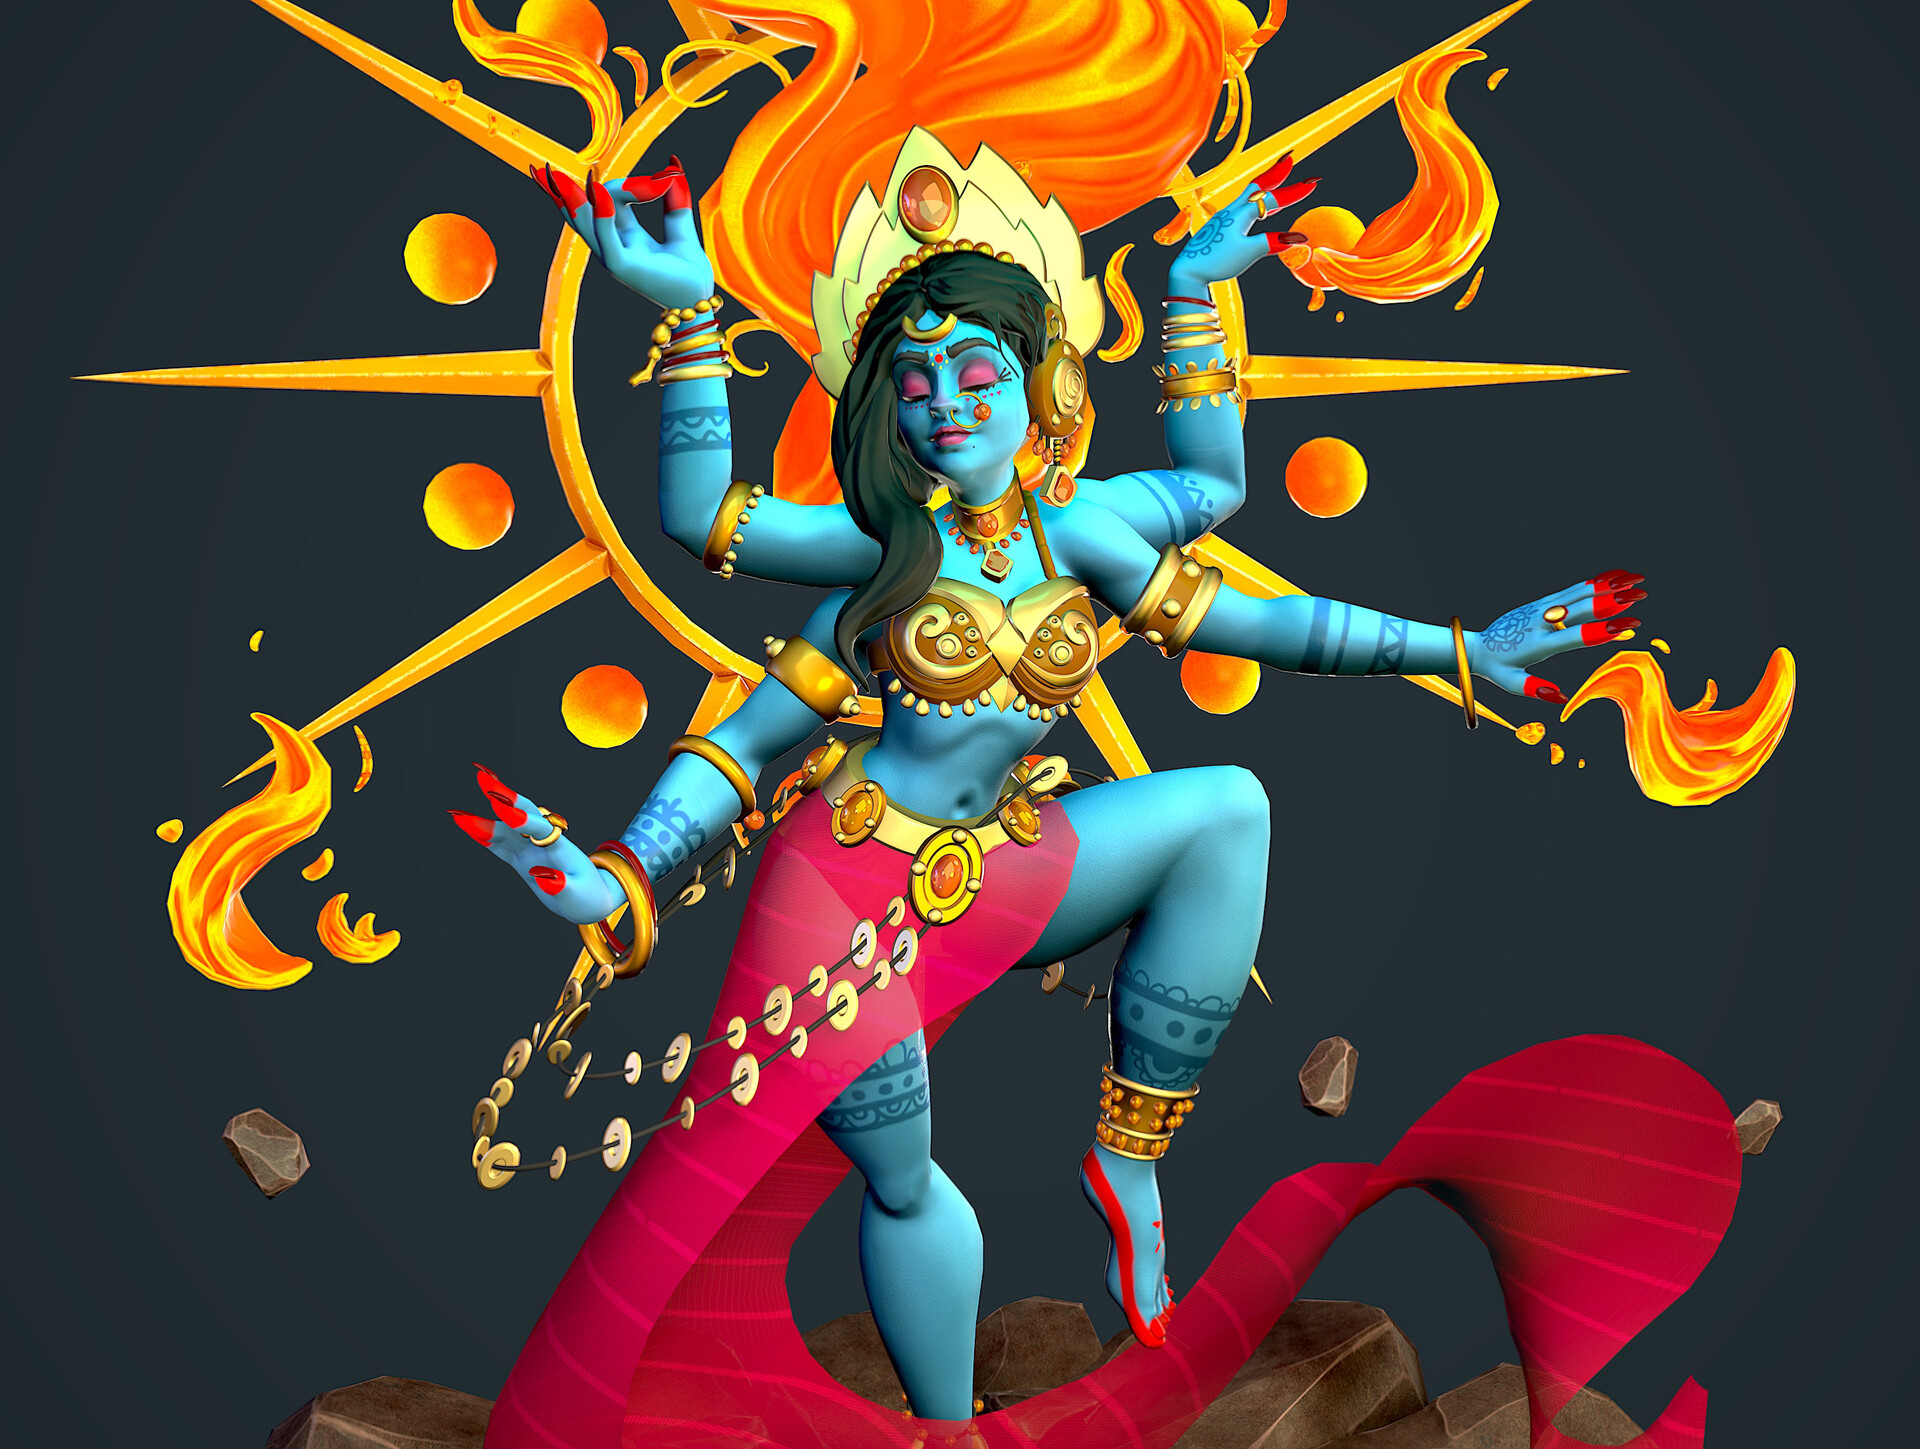 ArtStation - Maa Kali in Dancing pose.